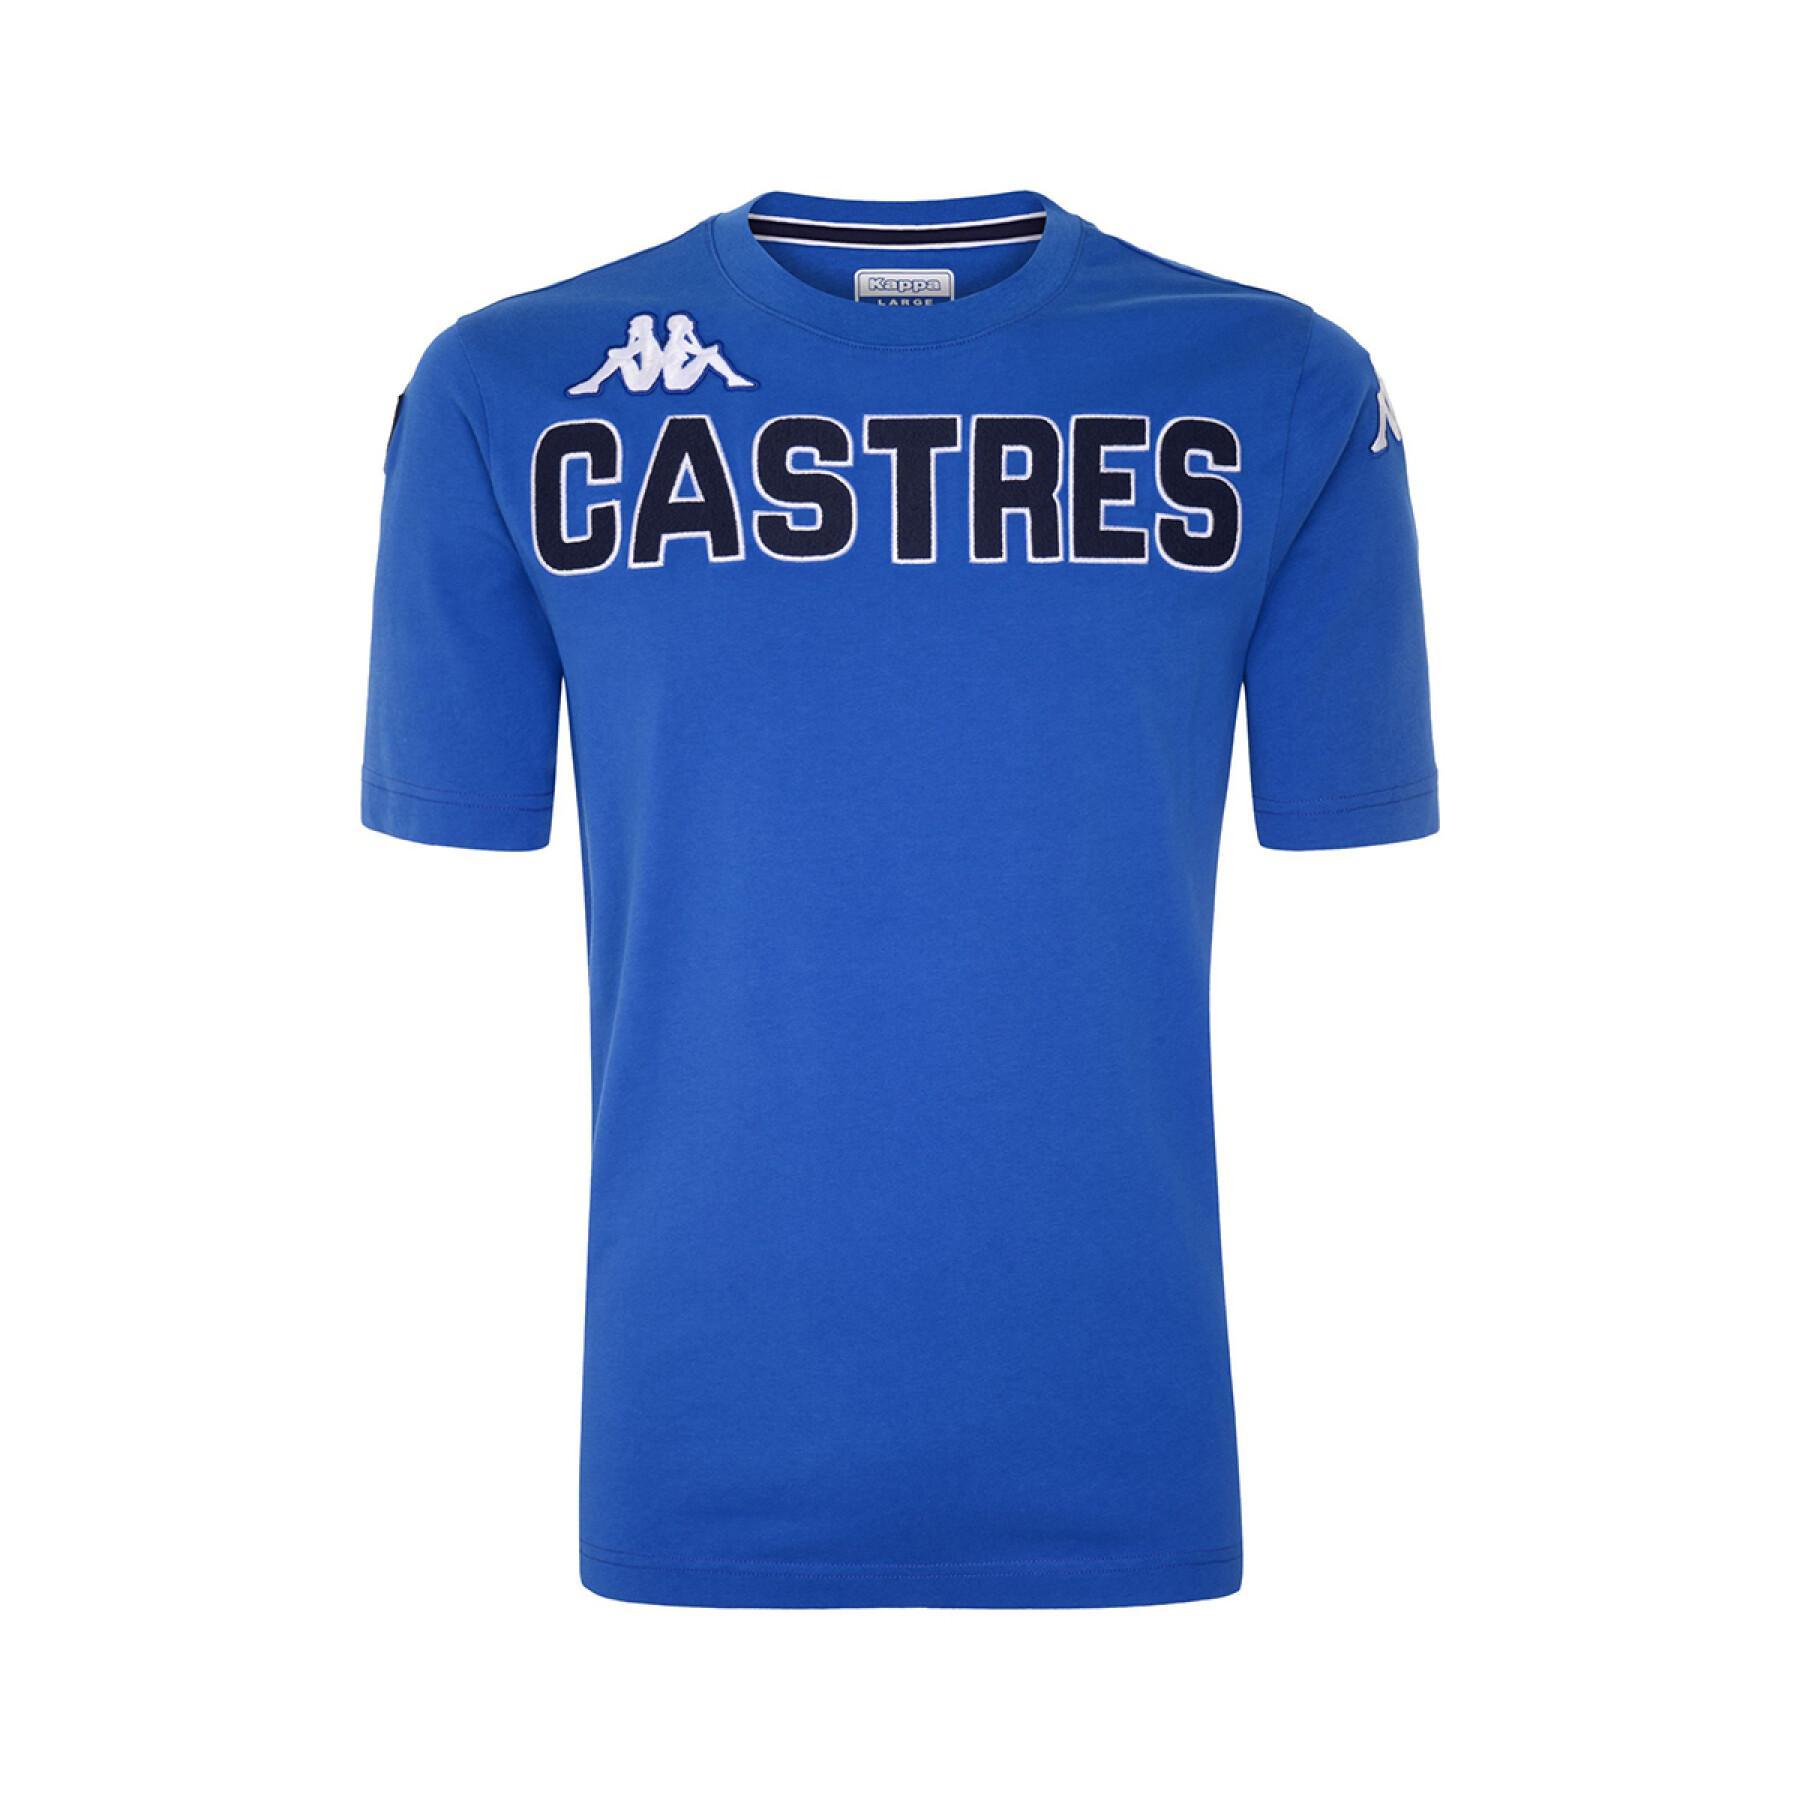 Camiseta para niños Castres Olympique 2021/22 eroi